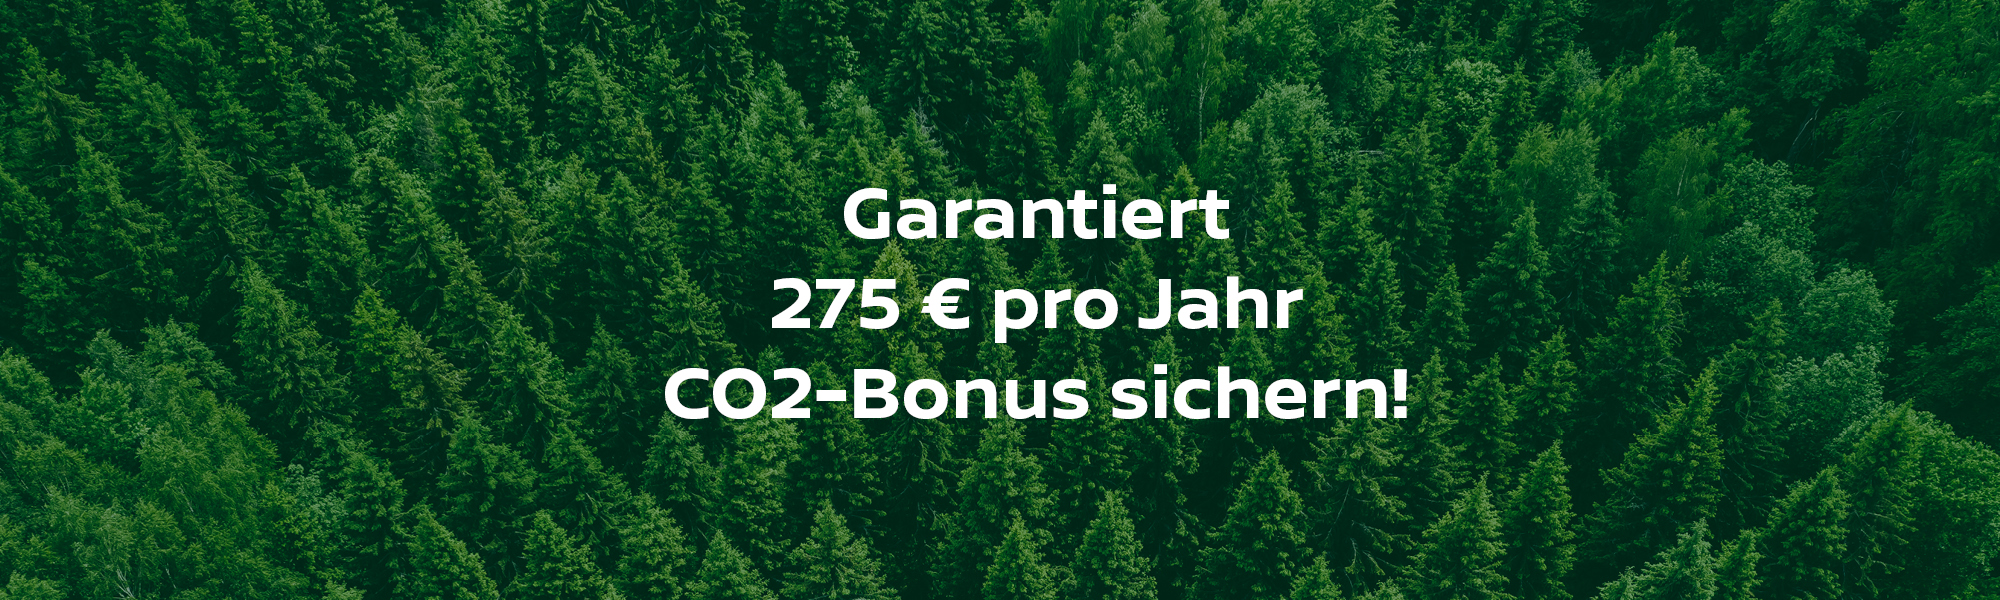 Jetzt CO2-Bonus beantragen und bis zu 275€ sichern